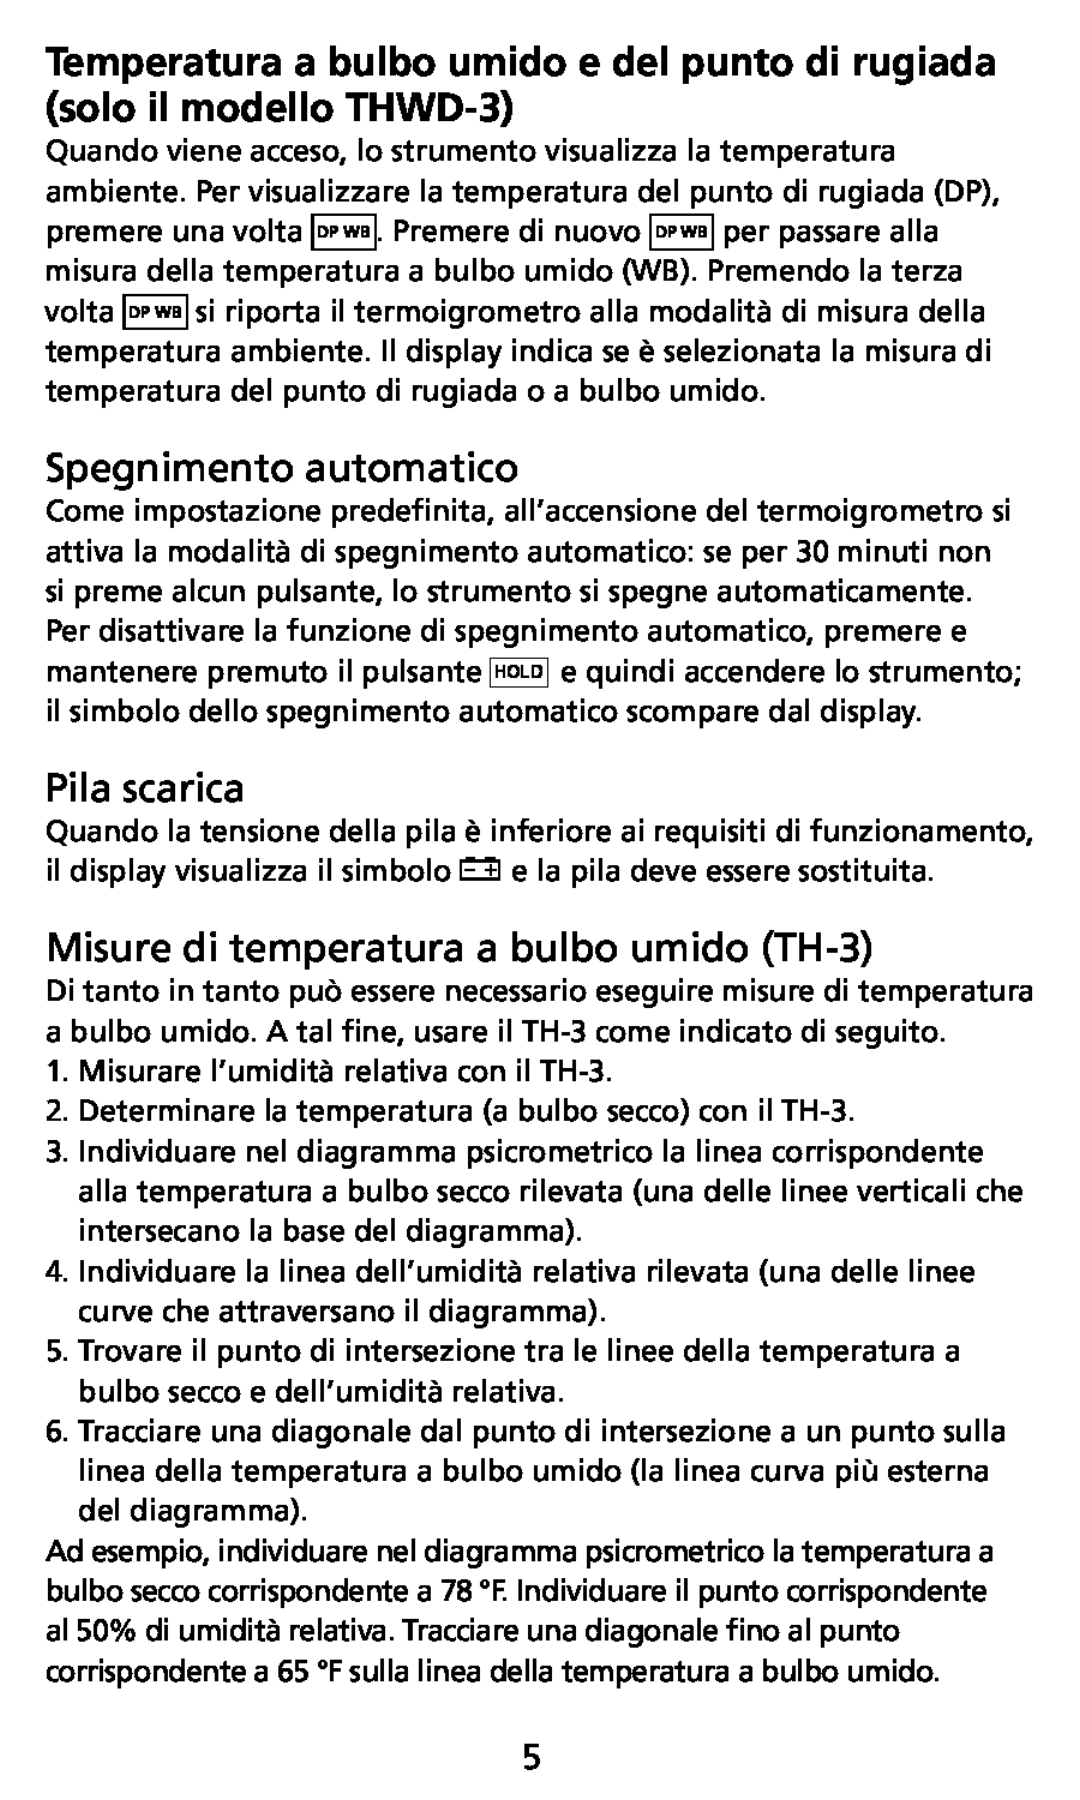 Ampro Corporation THWD-3 user manual Spegnimento automatico, Pila scarica, Misure di temperatura a bulbo umido TH-3 